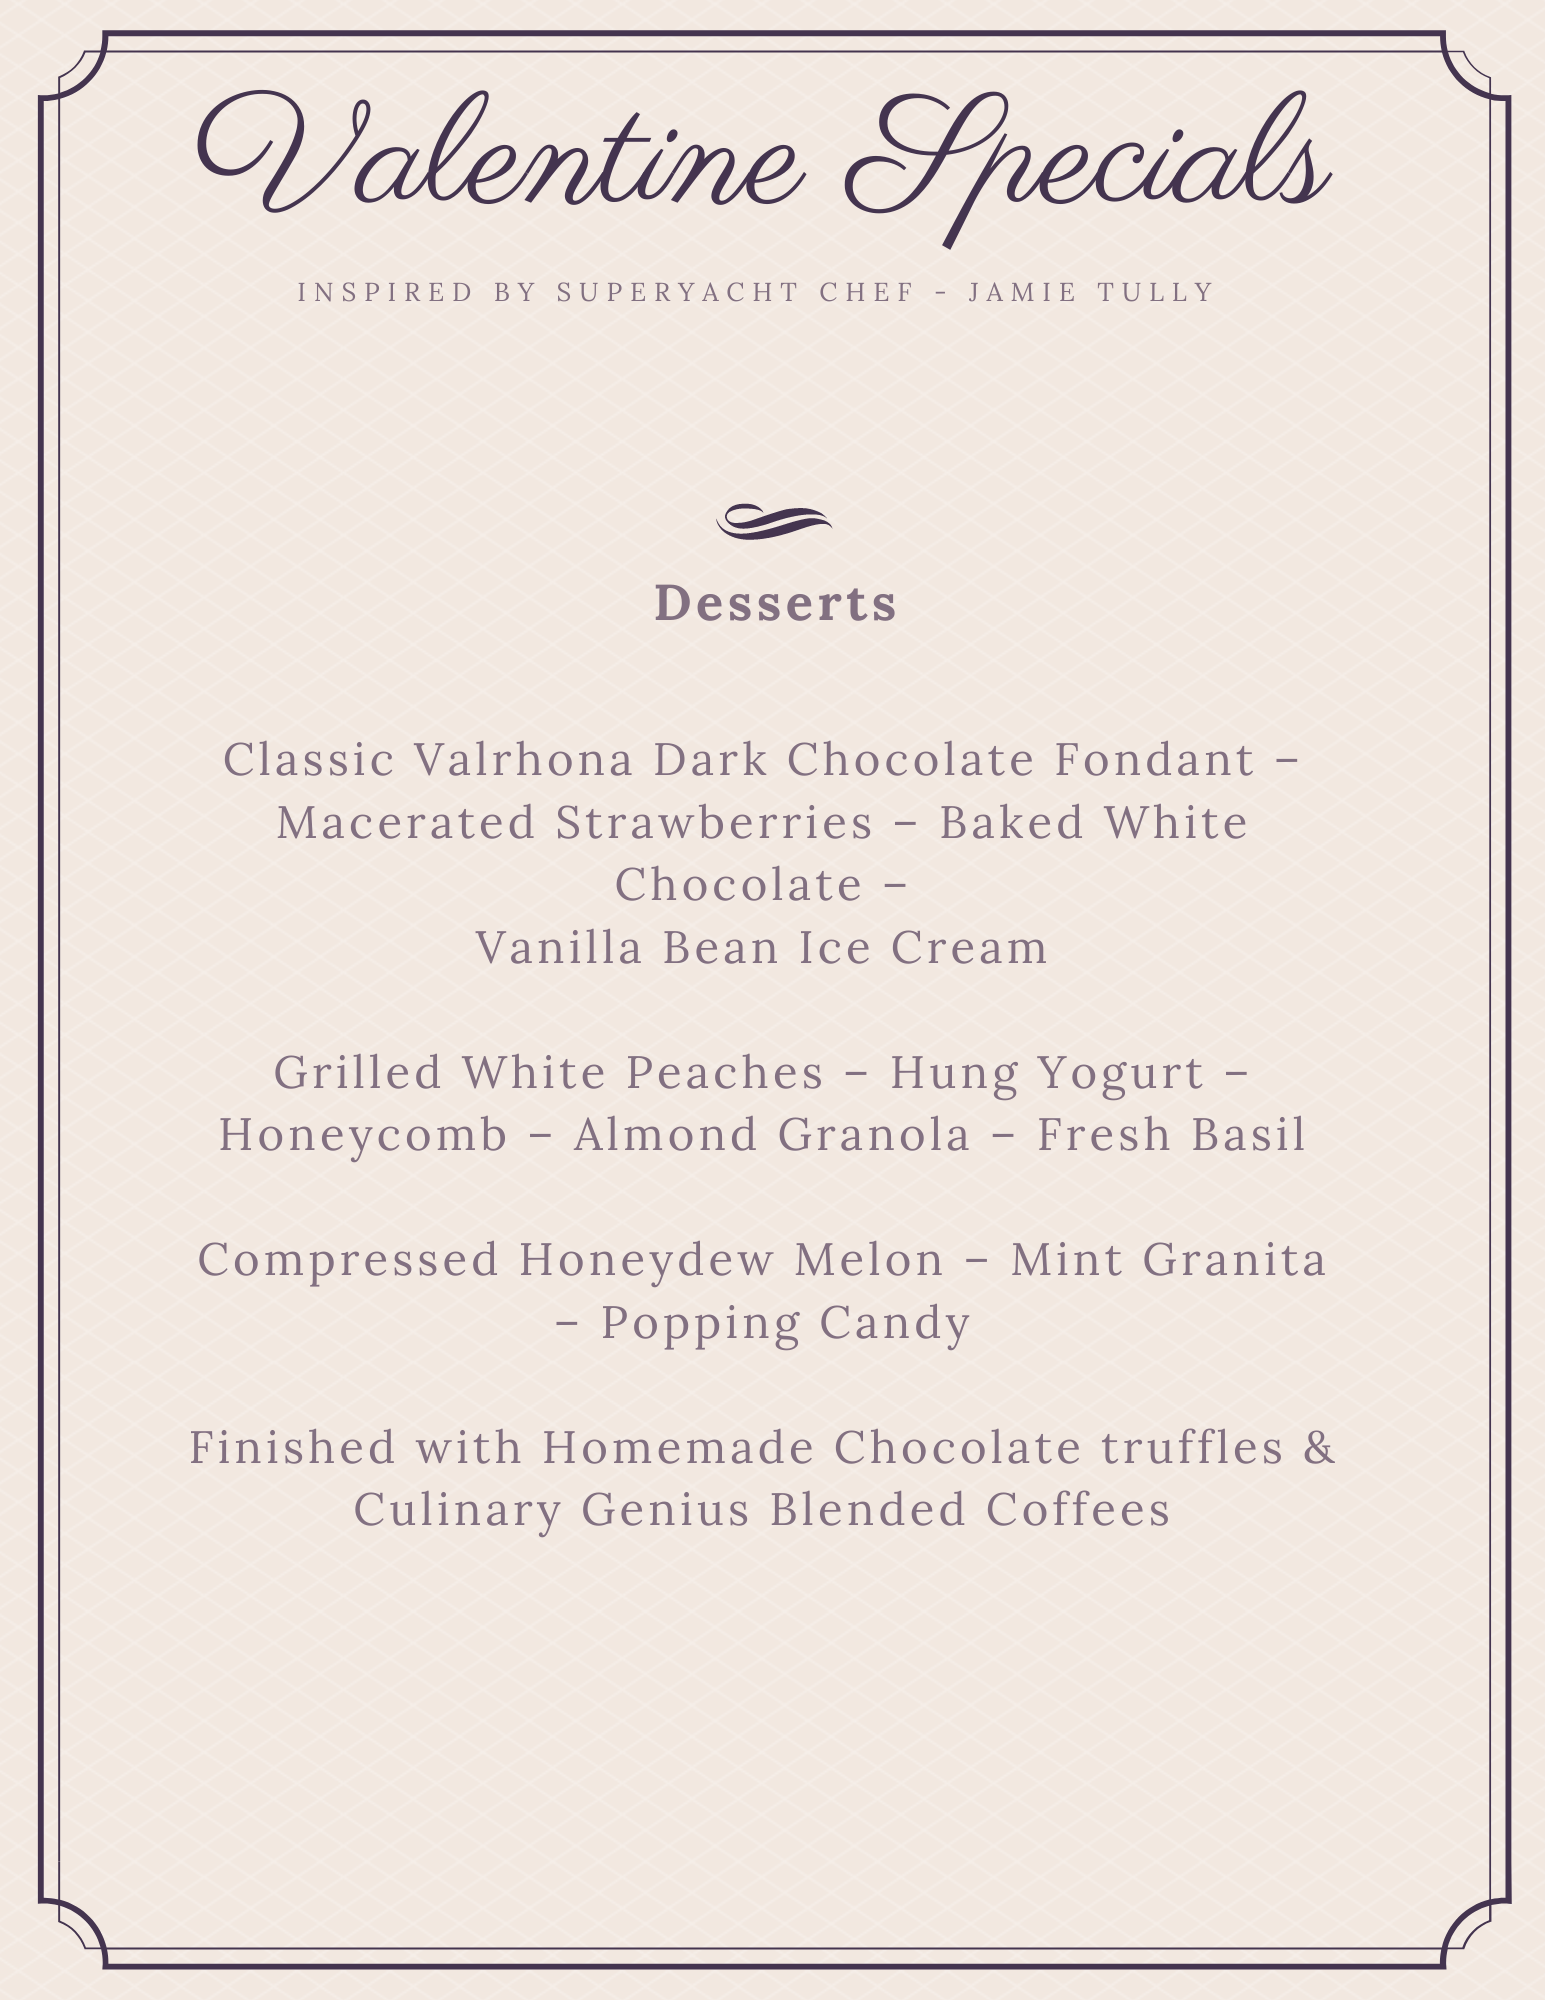 Gourmet Valentines day menu - Desserts